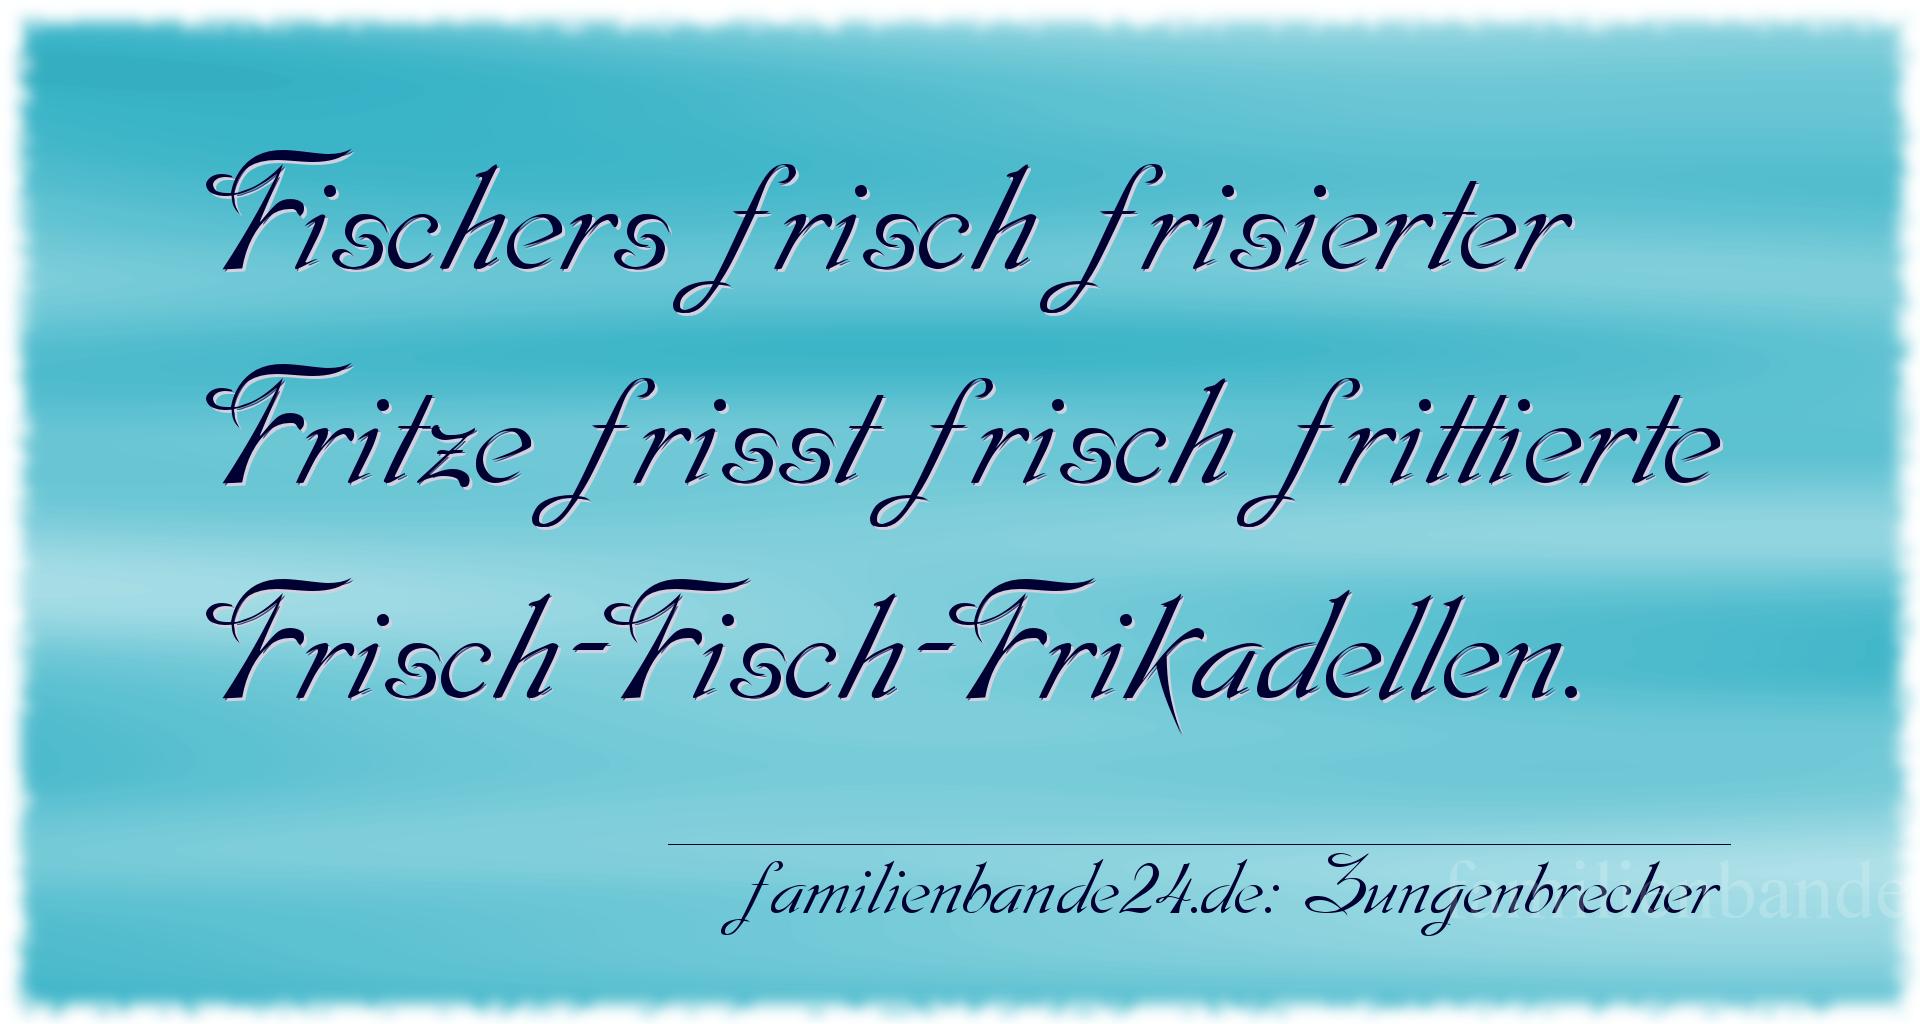 Zungenbrecher Nr. 702: Fischers frisch frisierter Fritze frißt frisch frittierte [...]